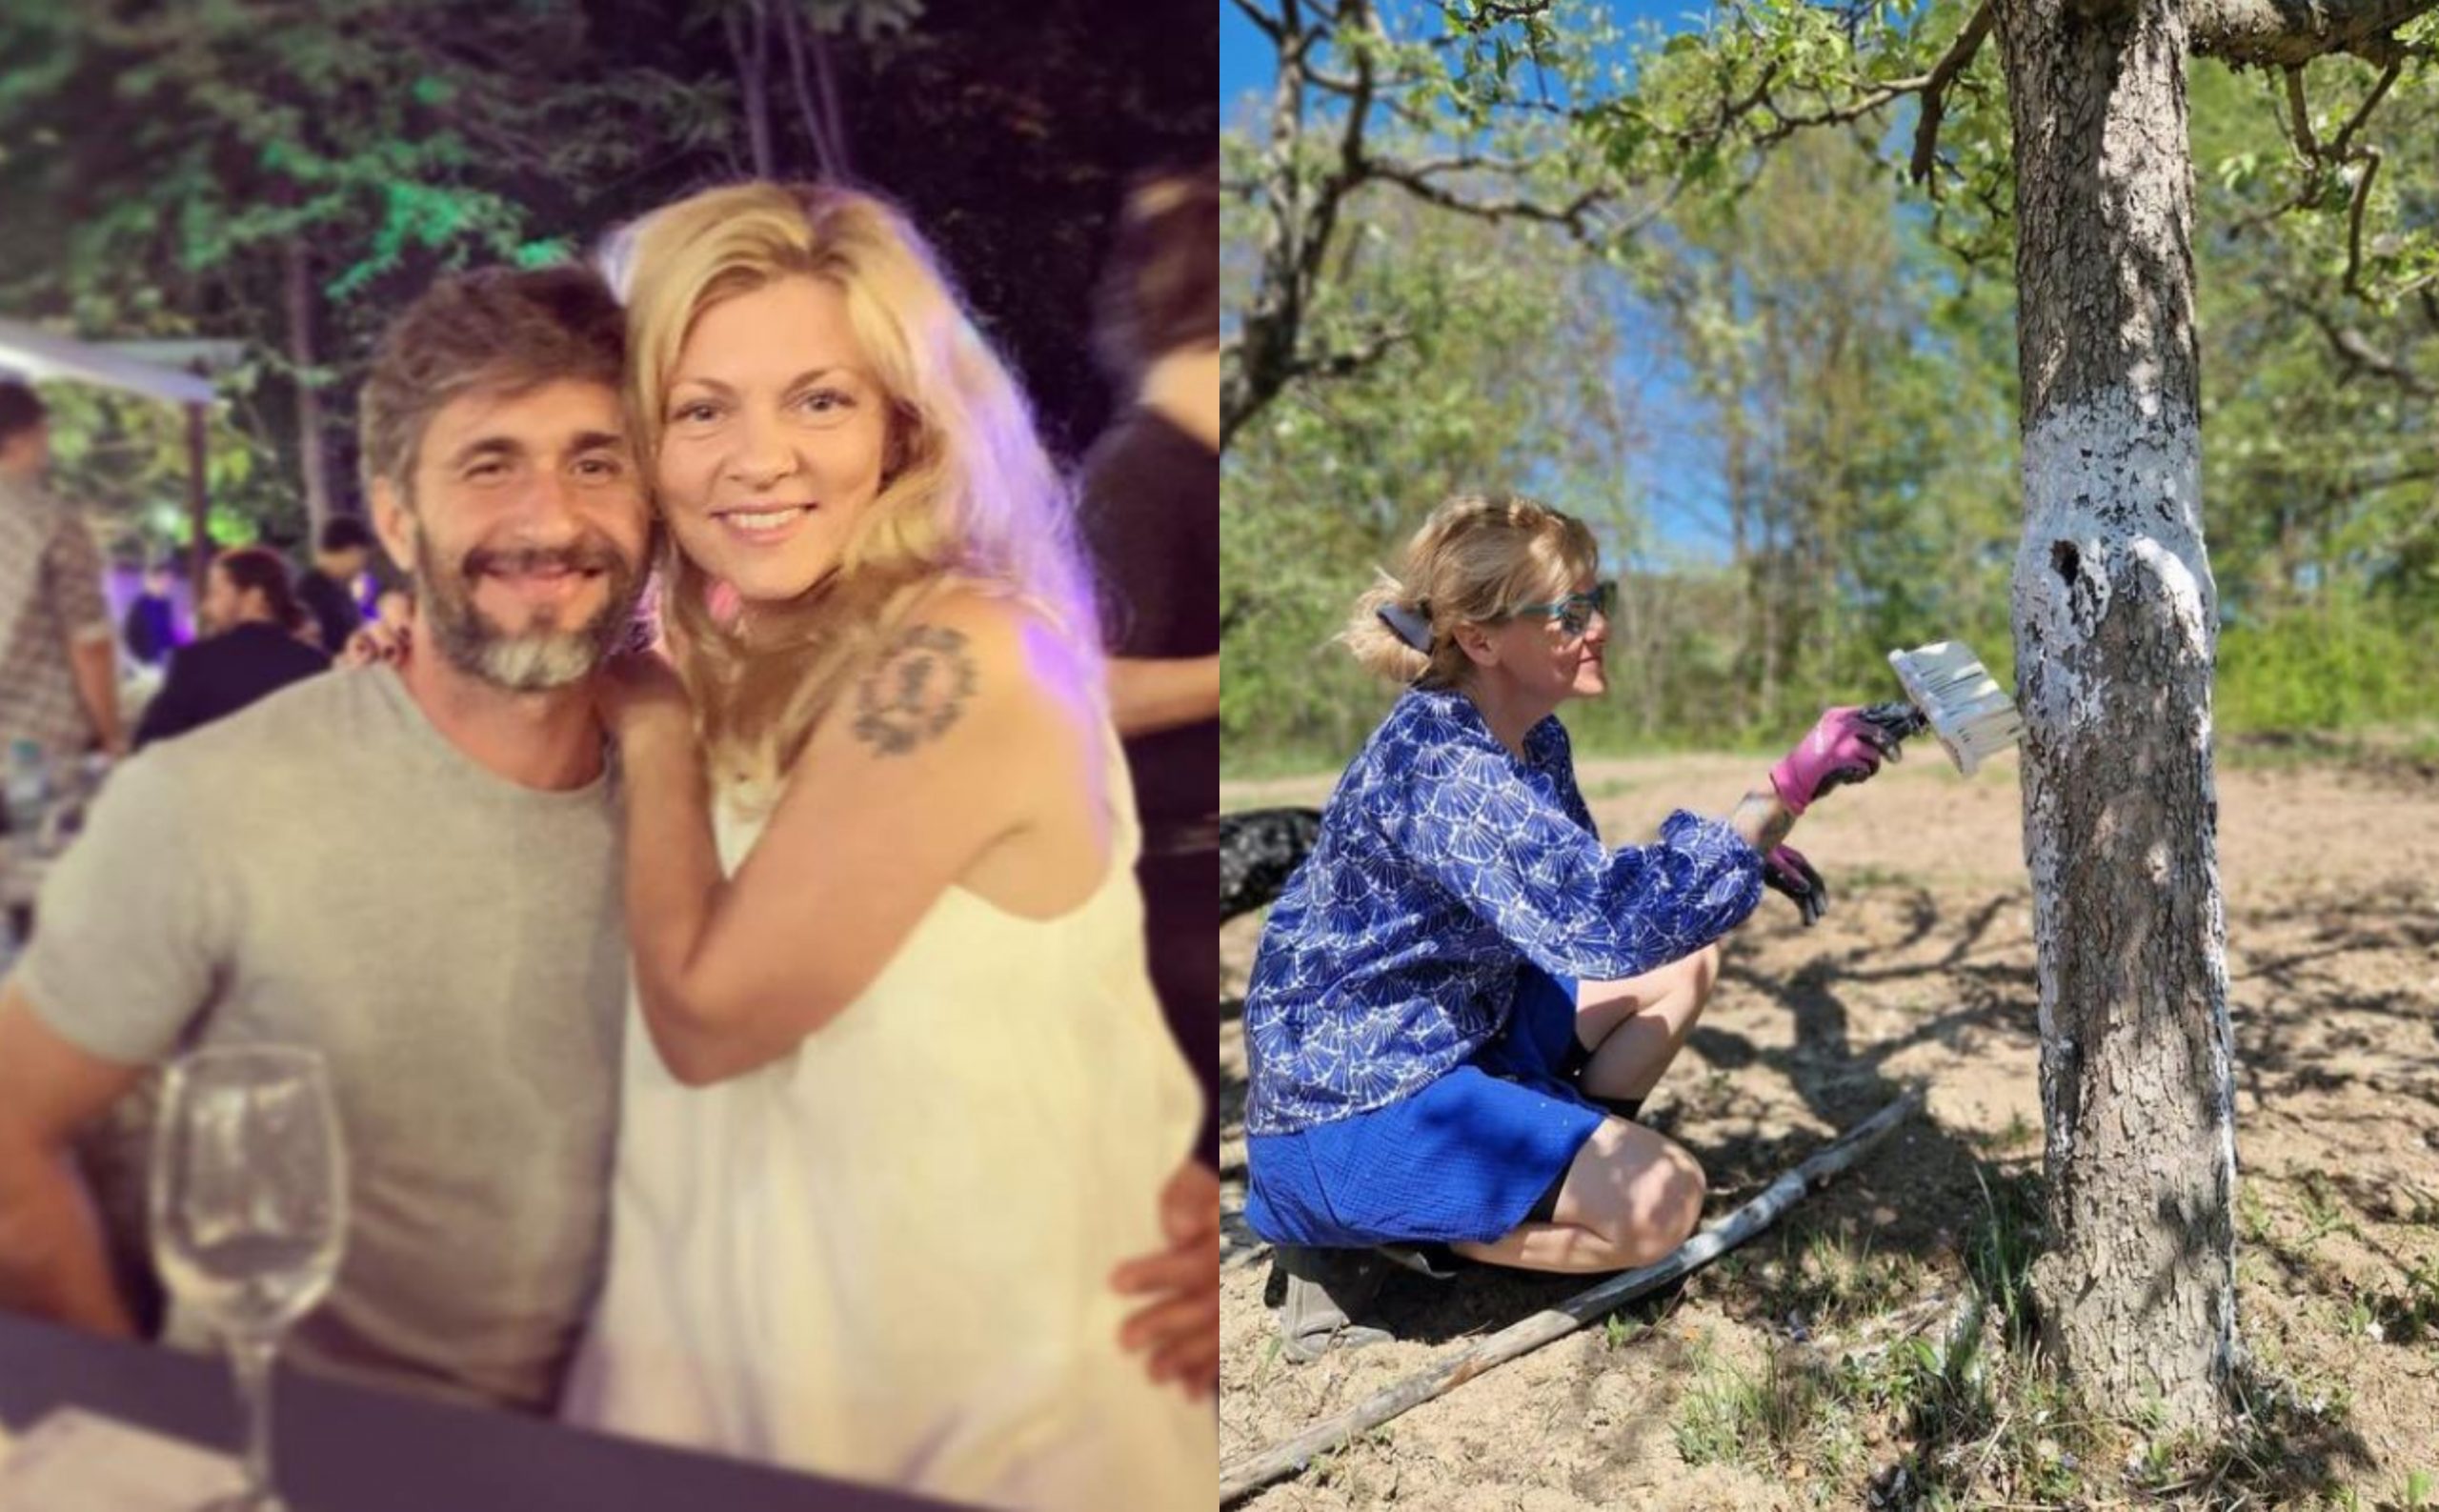 Imagini din gospodăria pe care Dana Nălbaru și Dragoș Bucur o au la țară. Au propria livadă, iar prezentatorul de la PRO TV se ocupă de arat